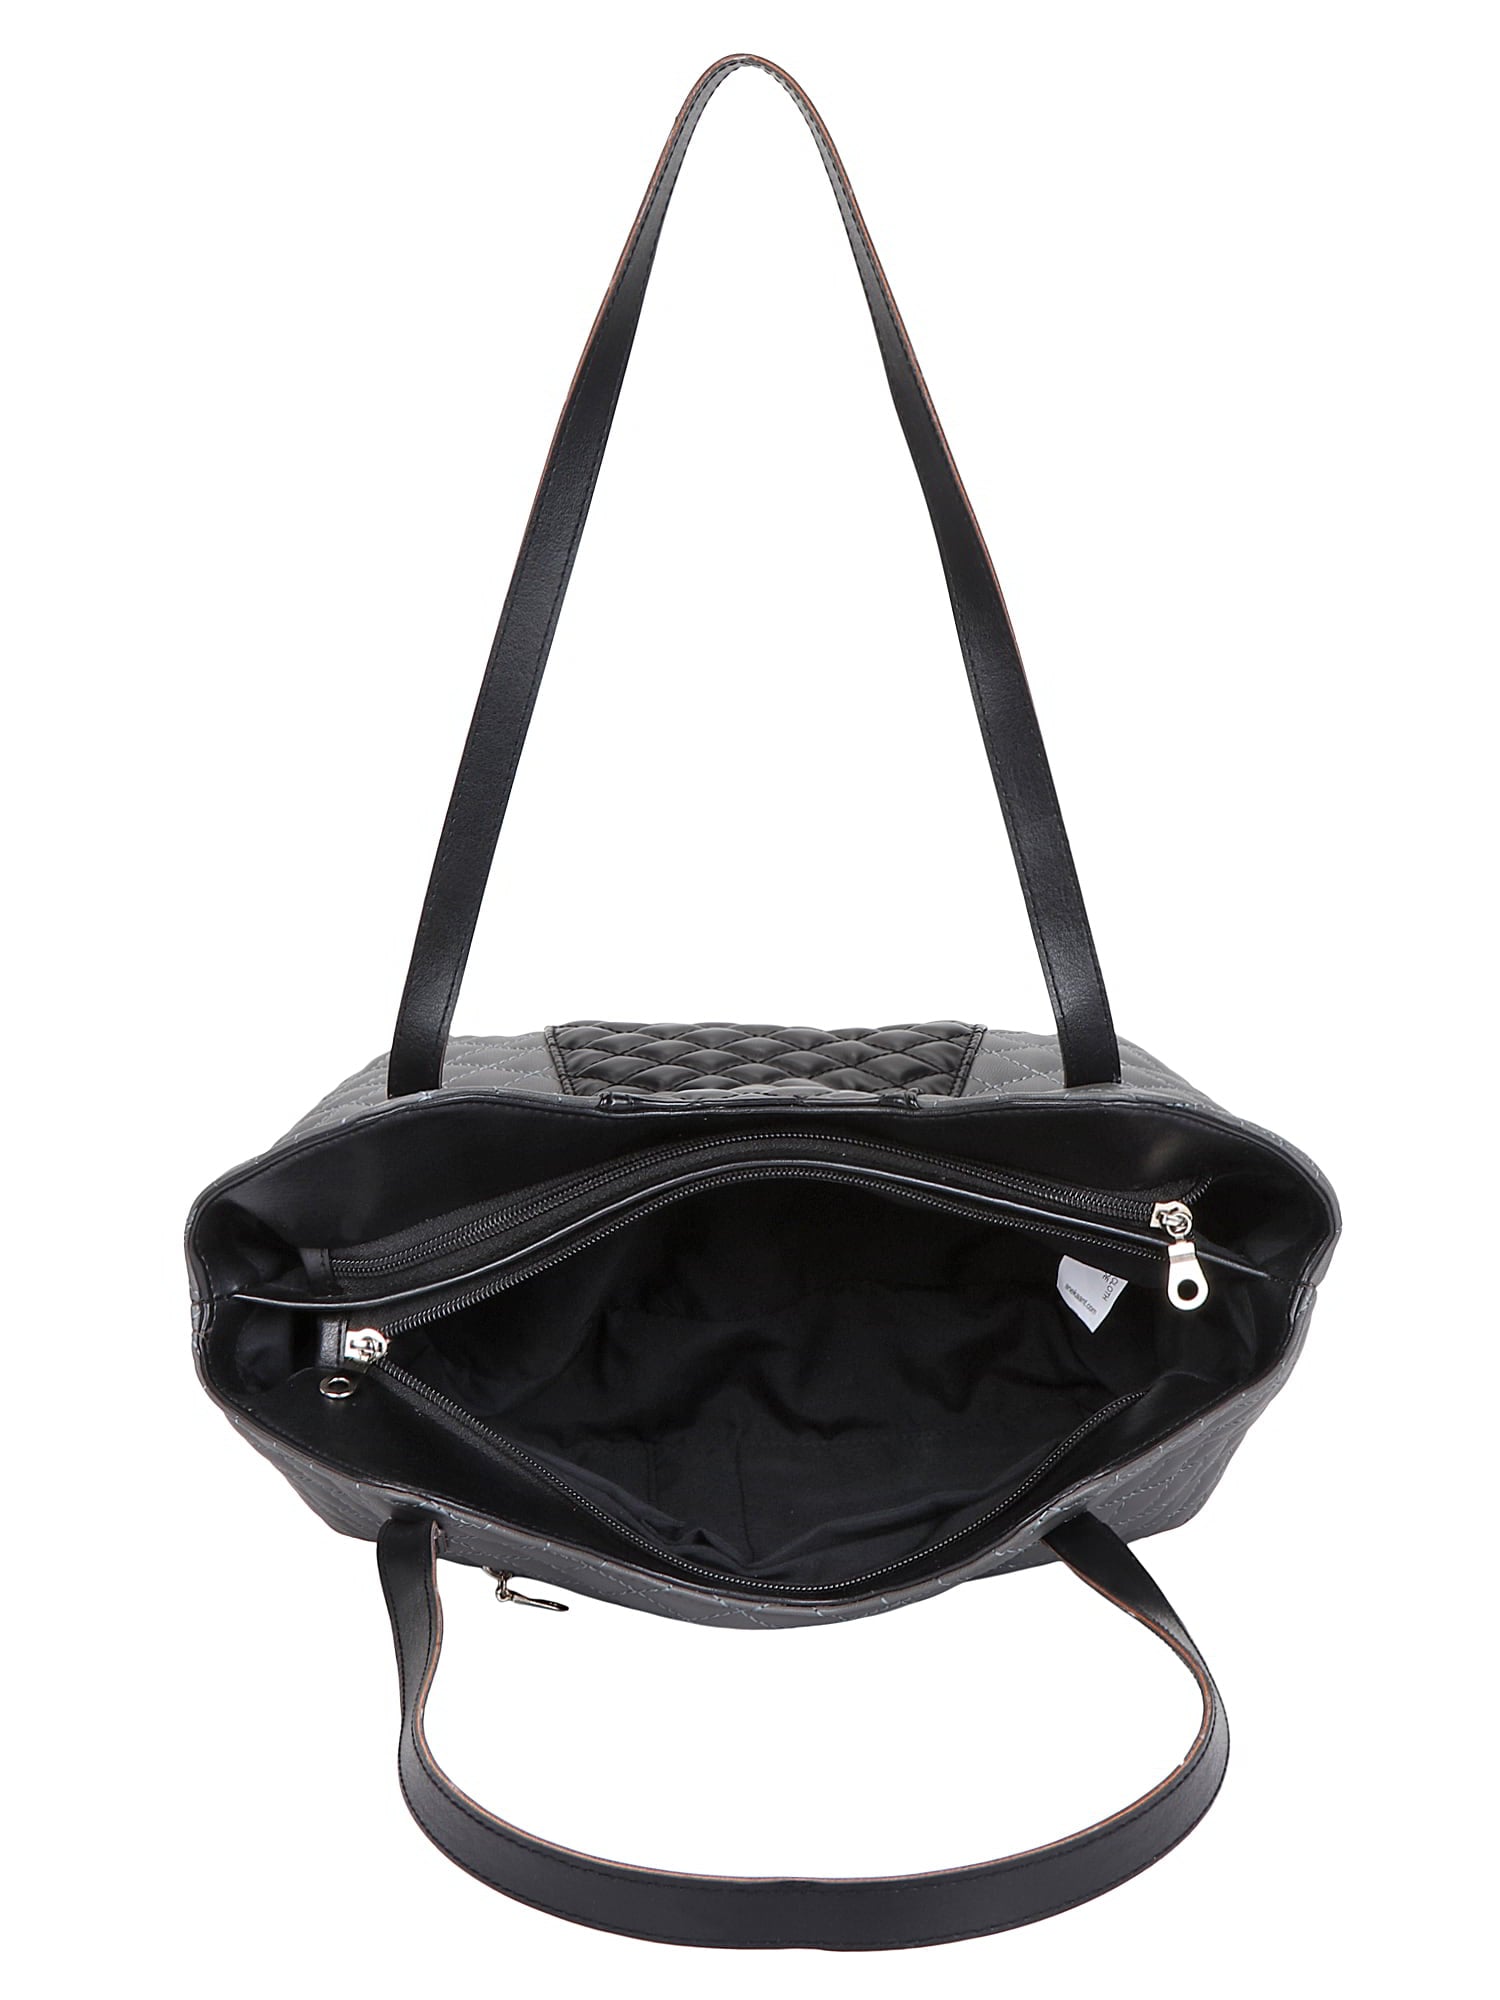 Glaze Quilted Leatherette Handbag